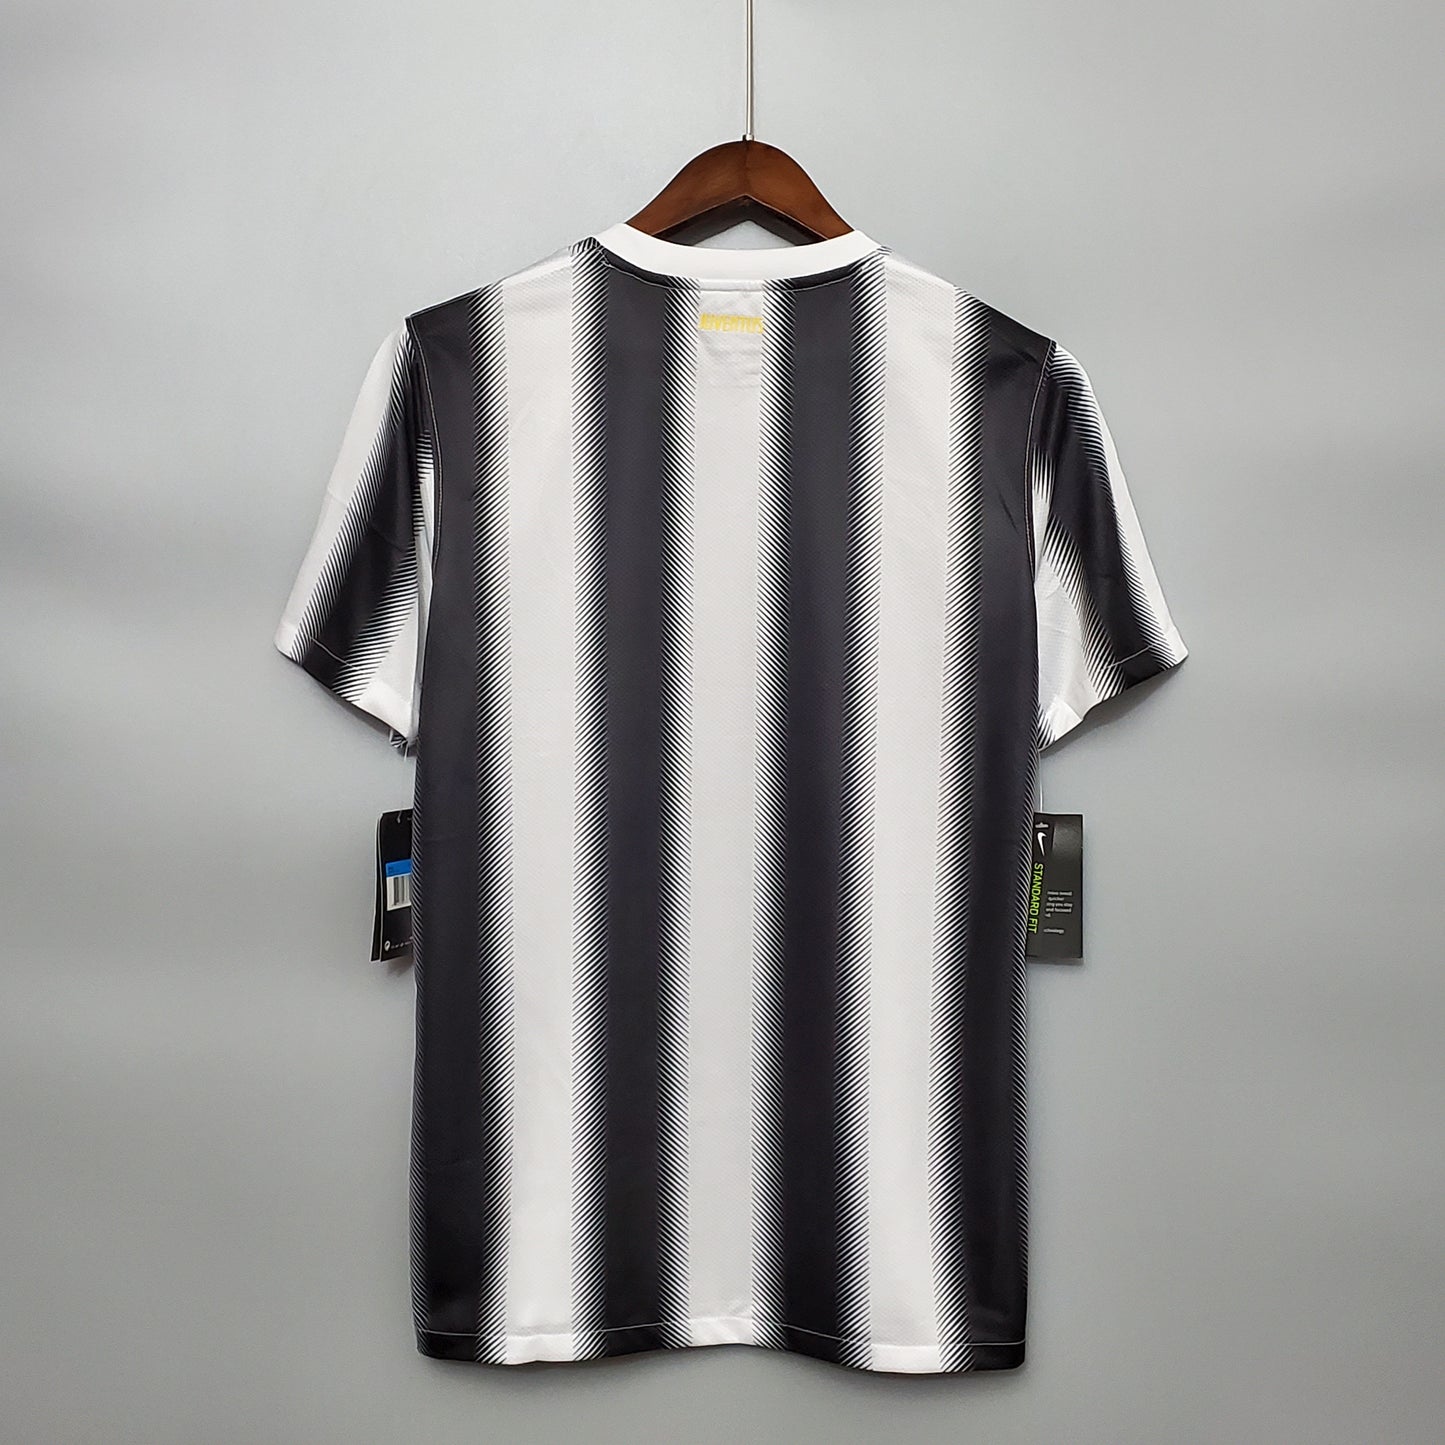 Juventus 11-12 Home Shirt